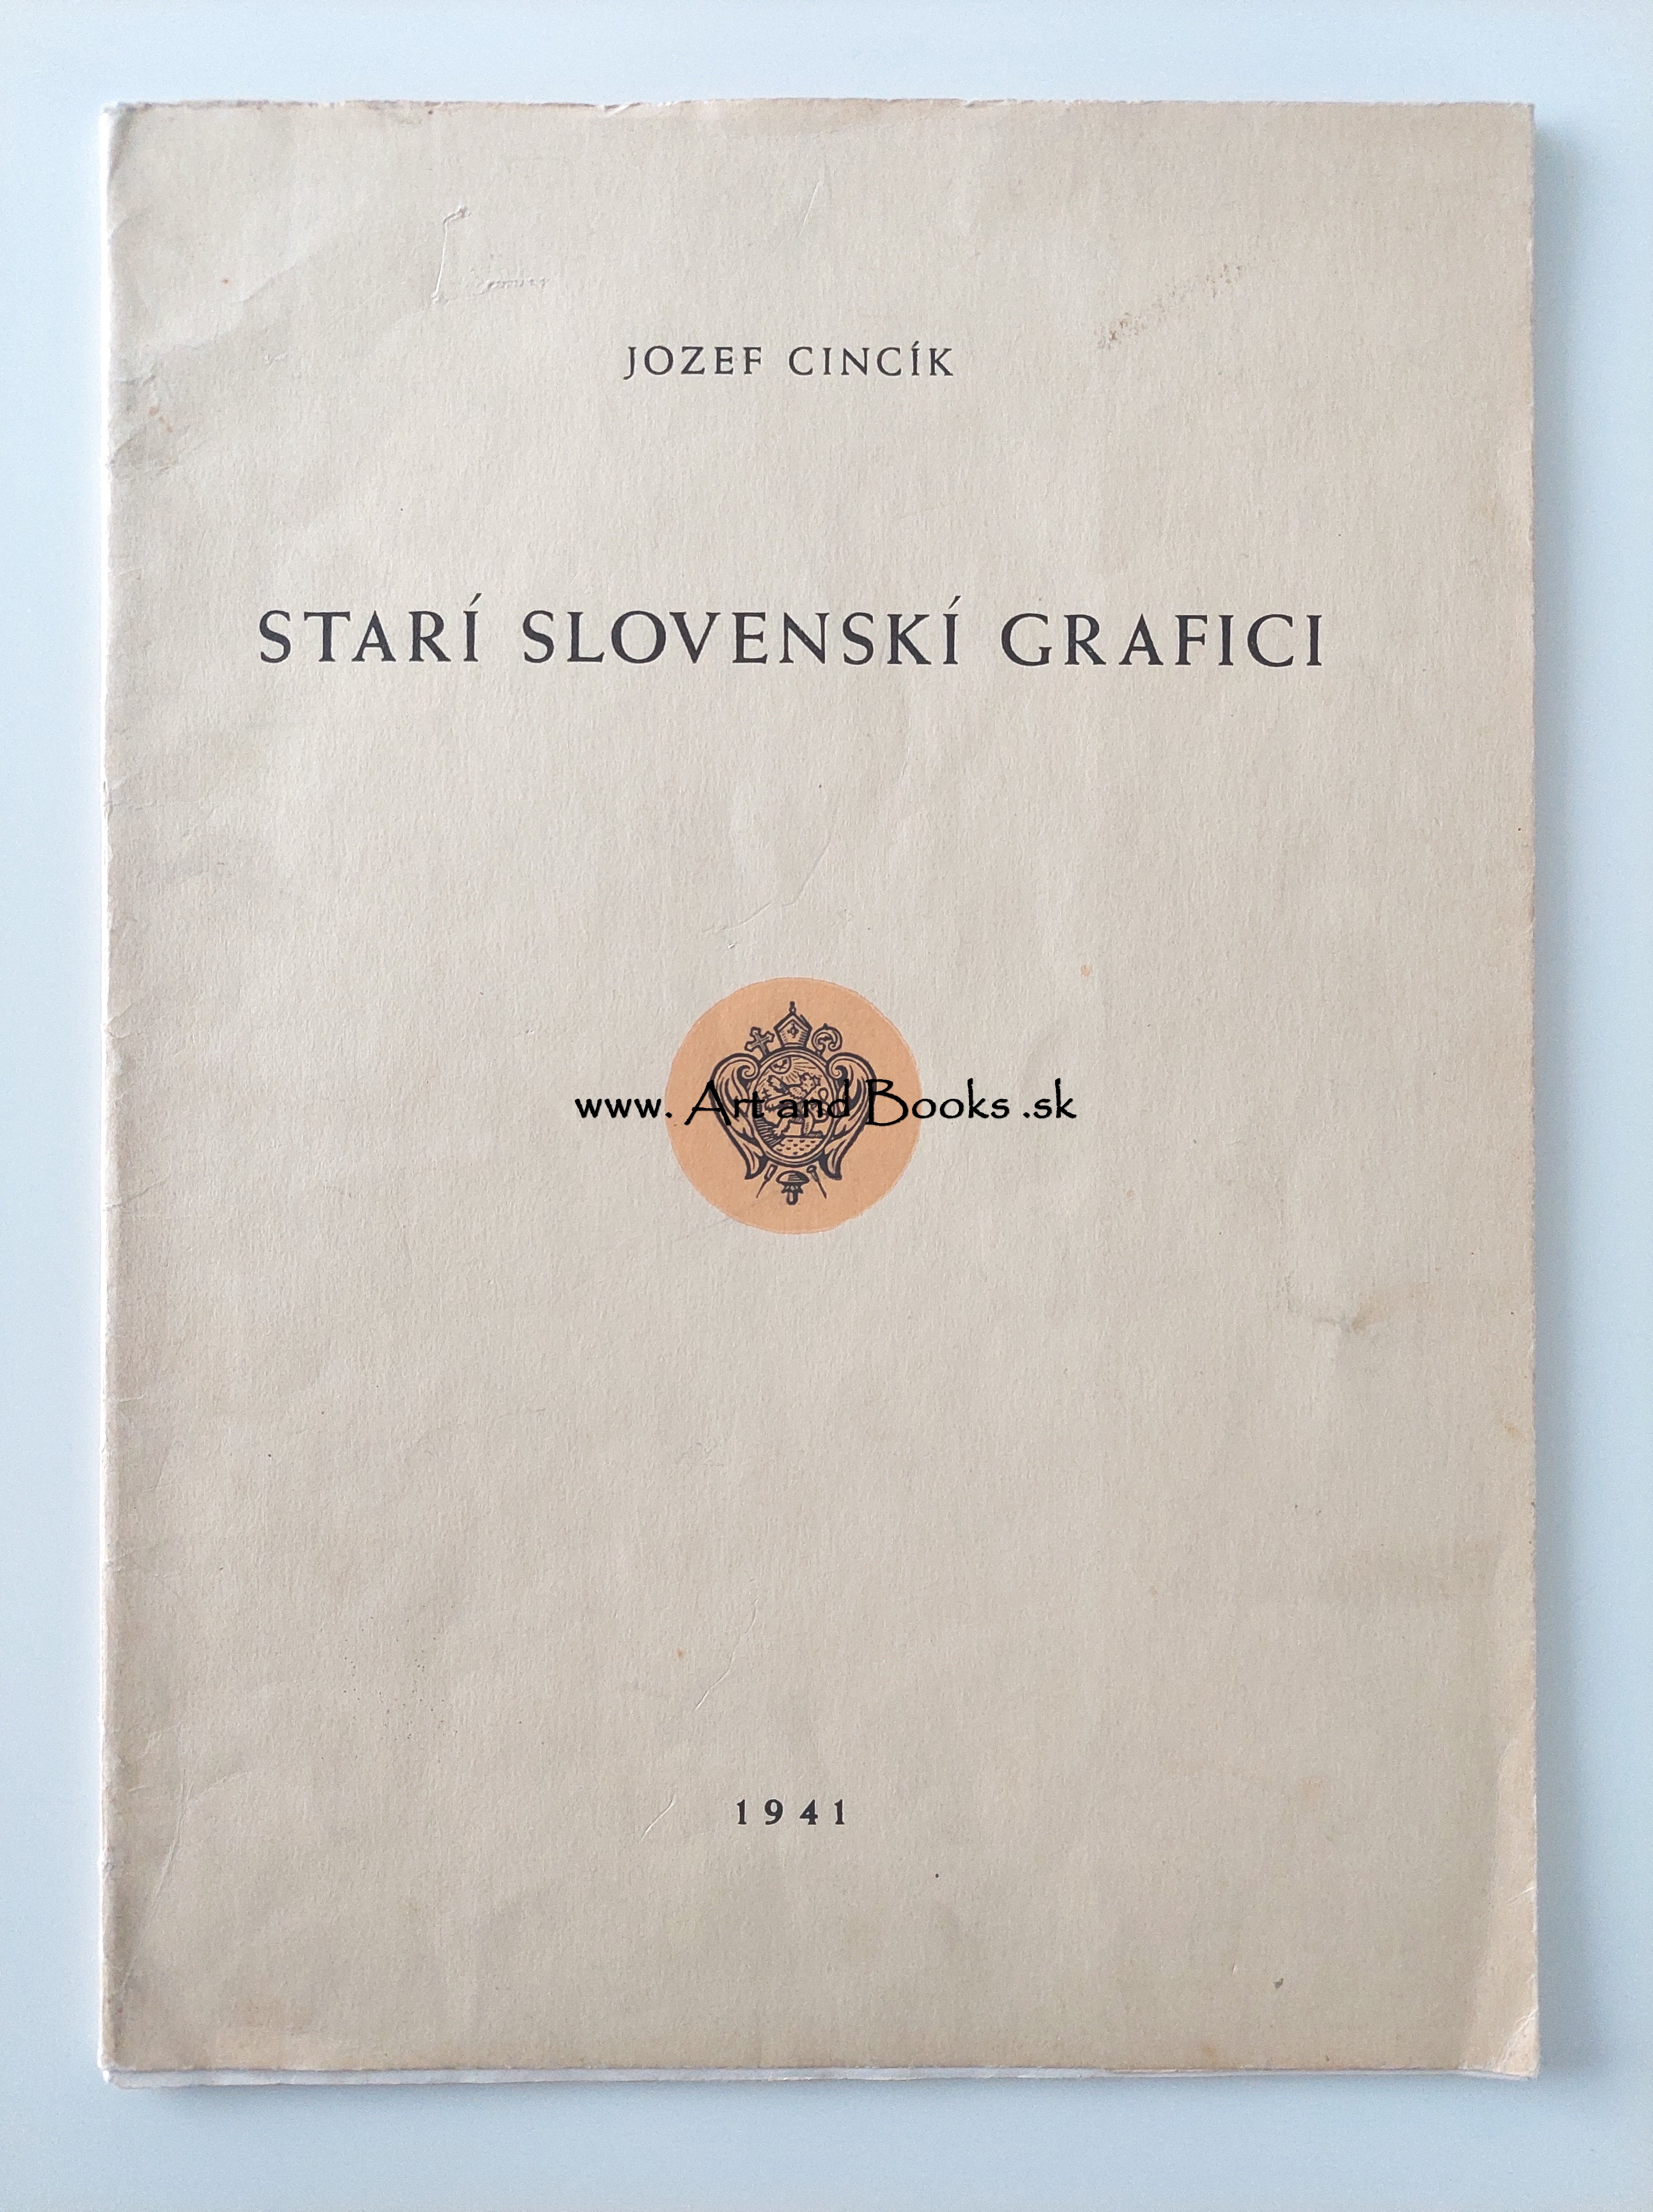 Jozef Cincík - STARÍ SLOVENSKÍ GRAFICI (1941) ● 105903